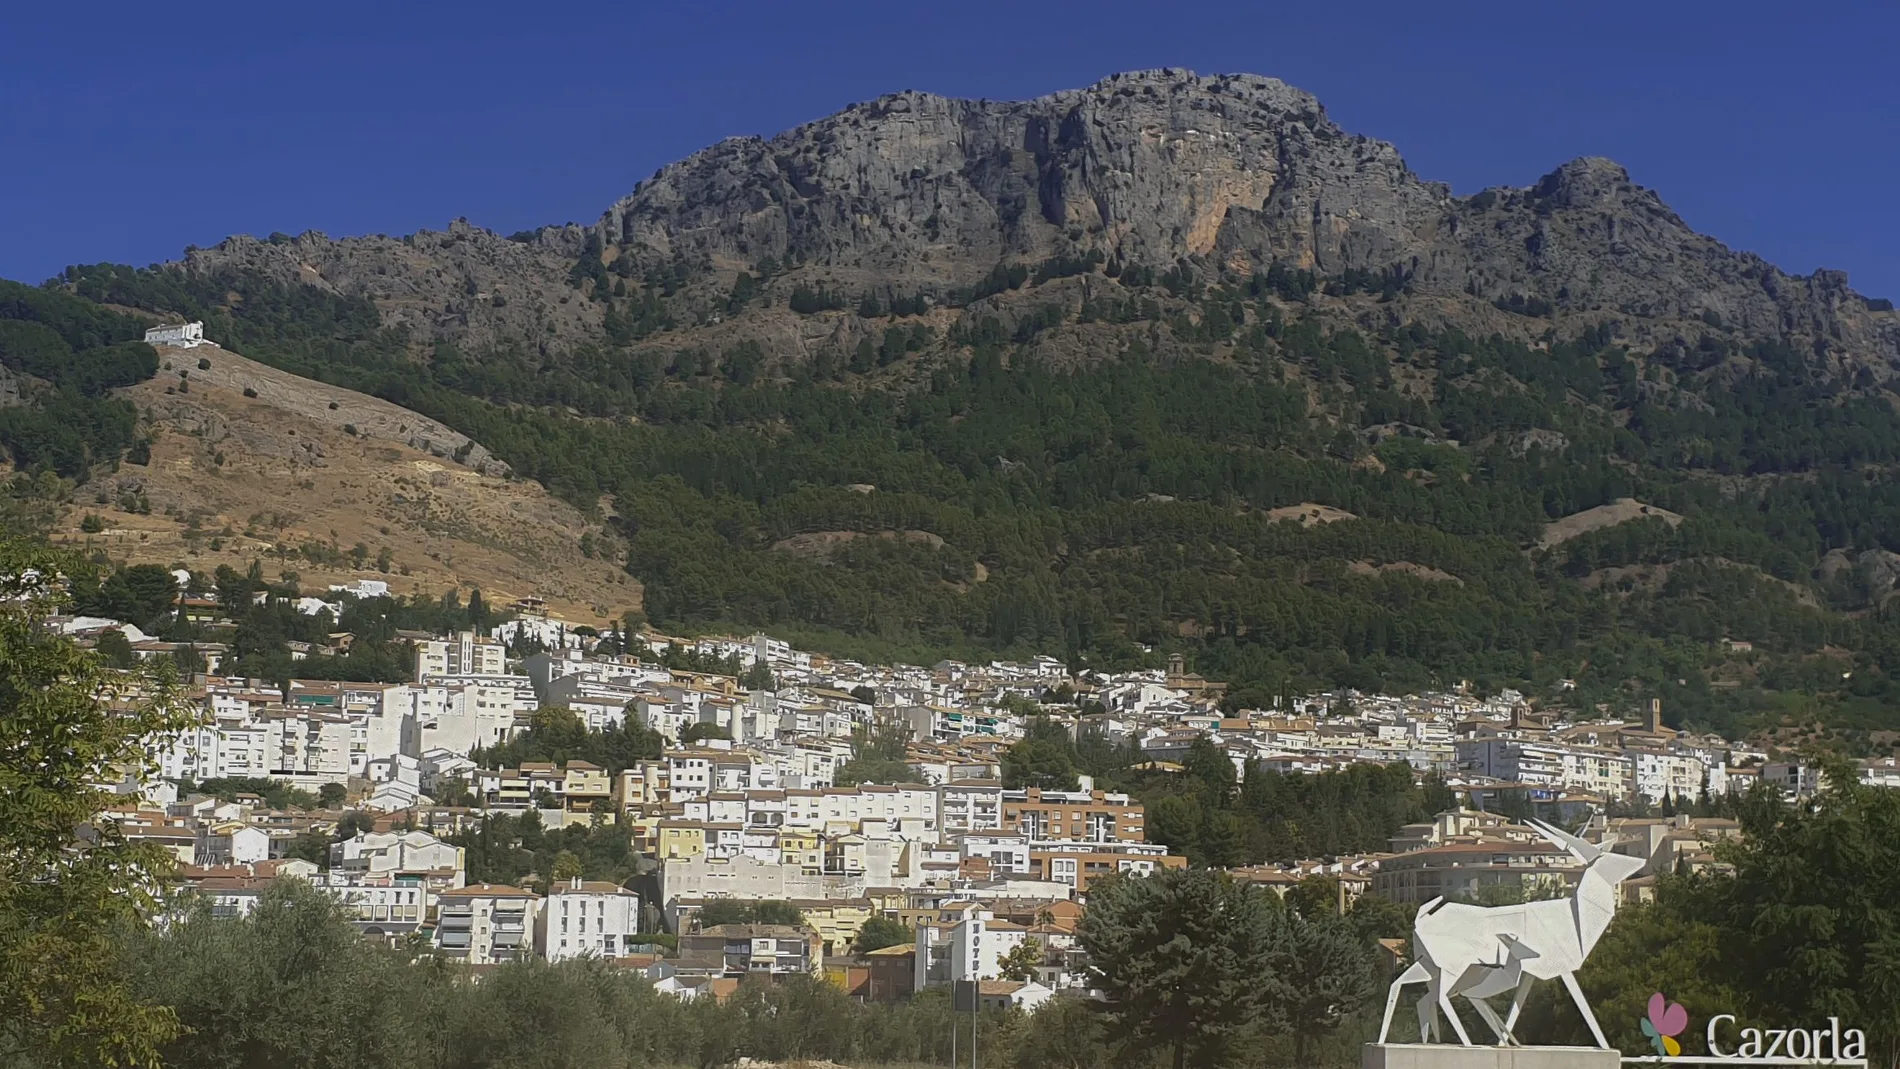 Vista del municipio jiennense de Cazorla, enclavado en el parque natural de las sierras de Cazorla, Segura y Las Villas